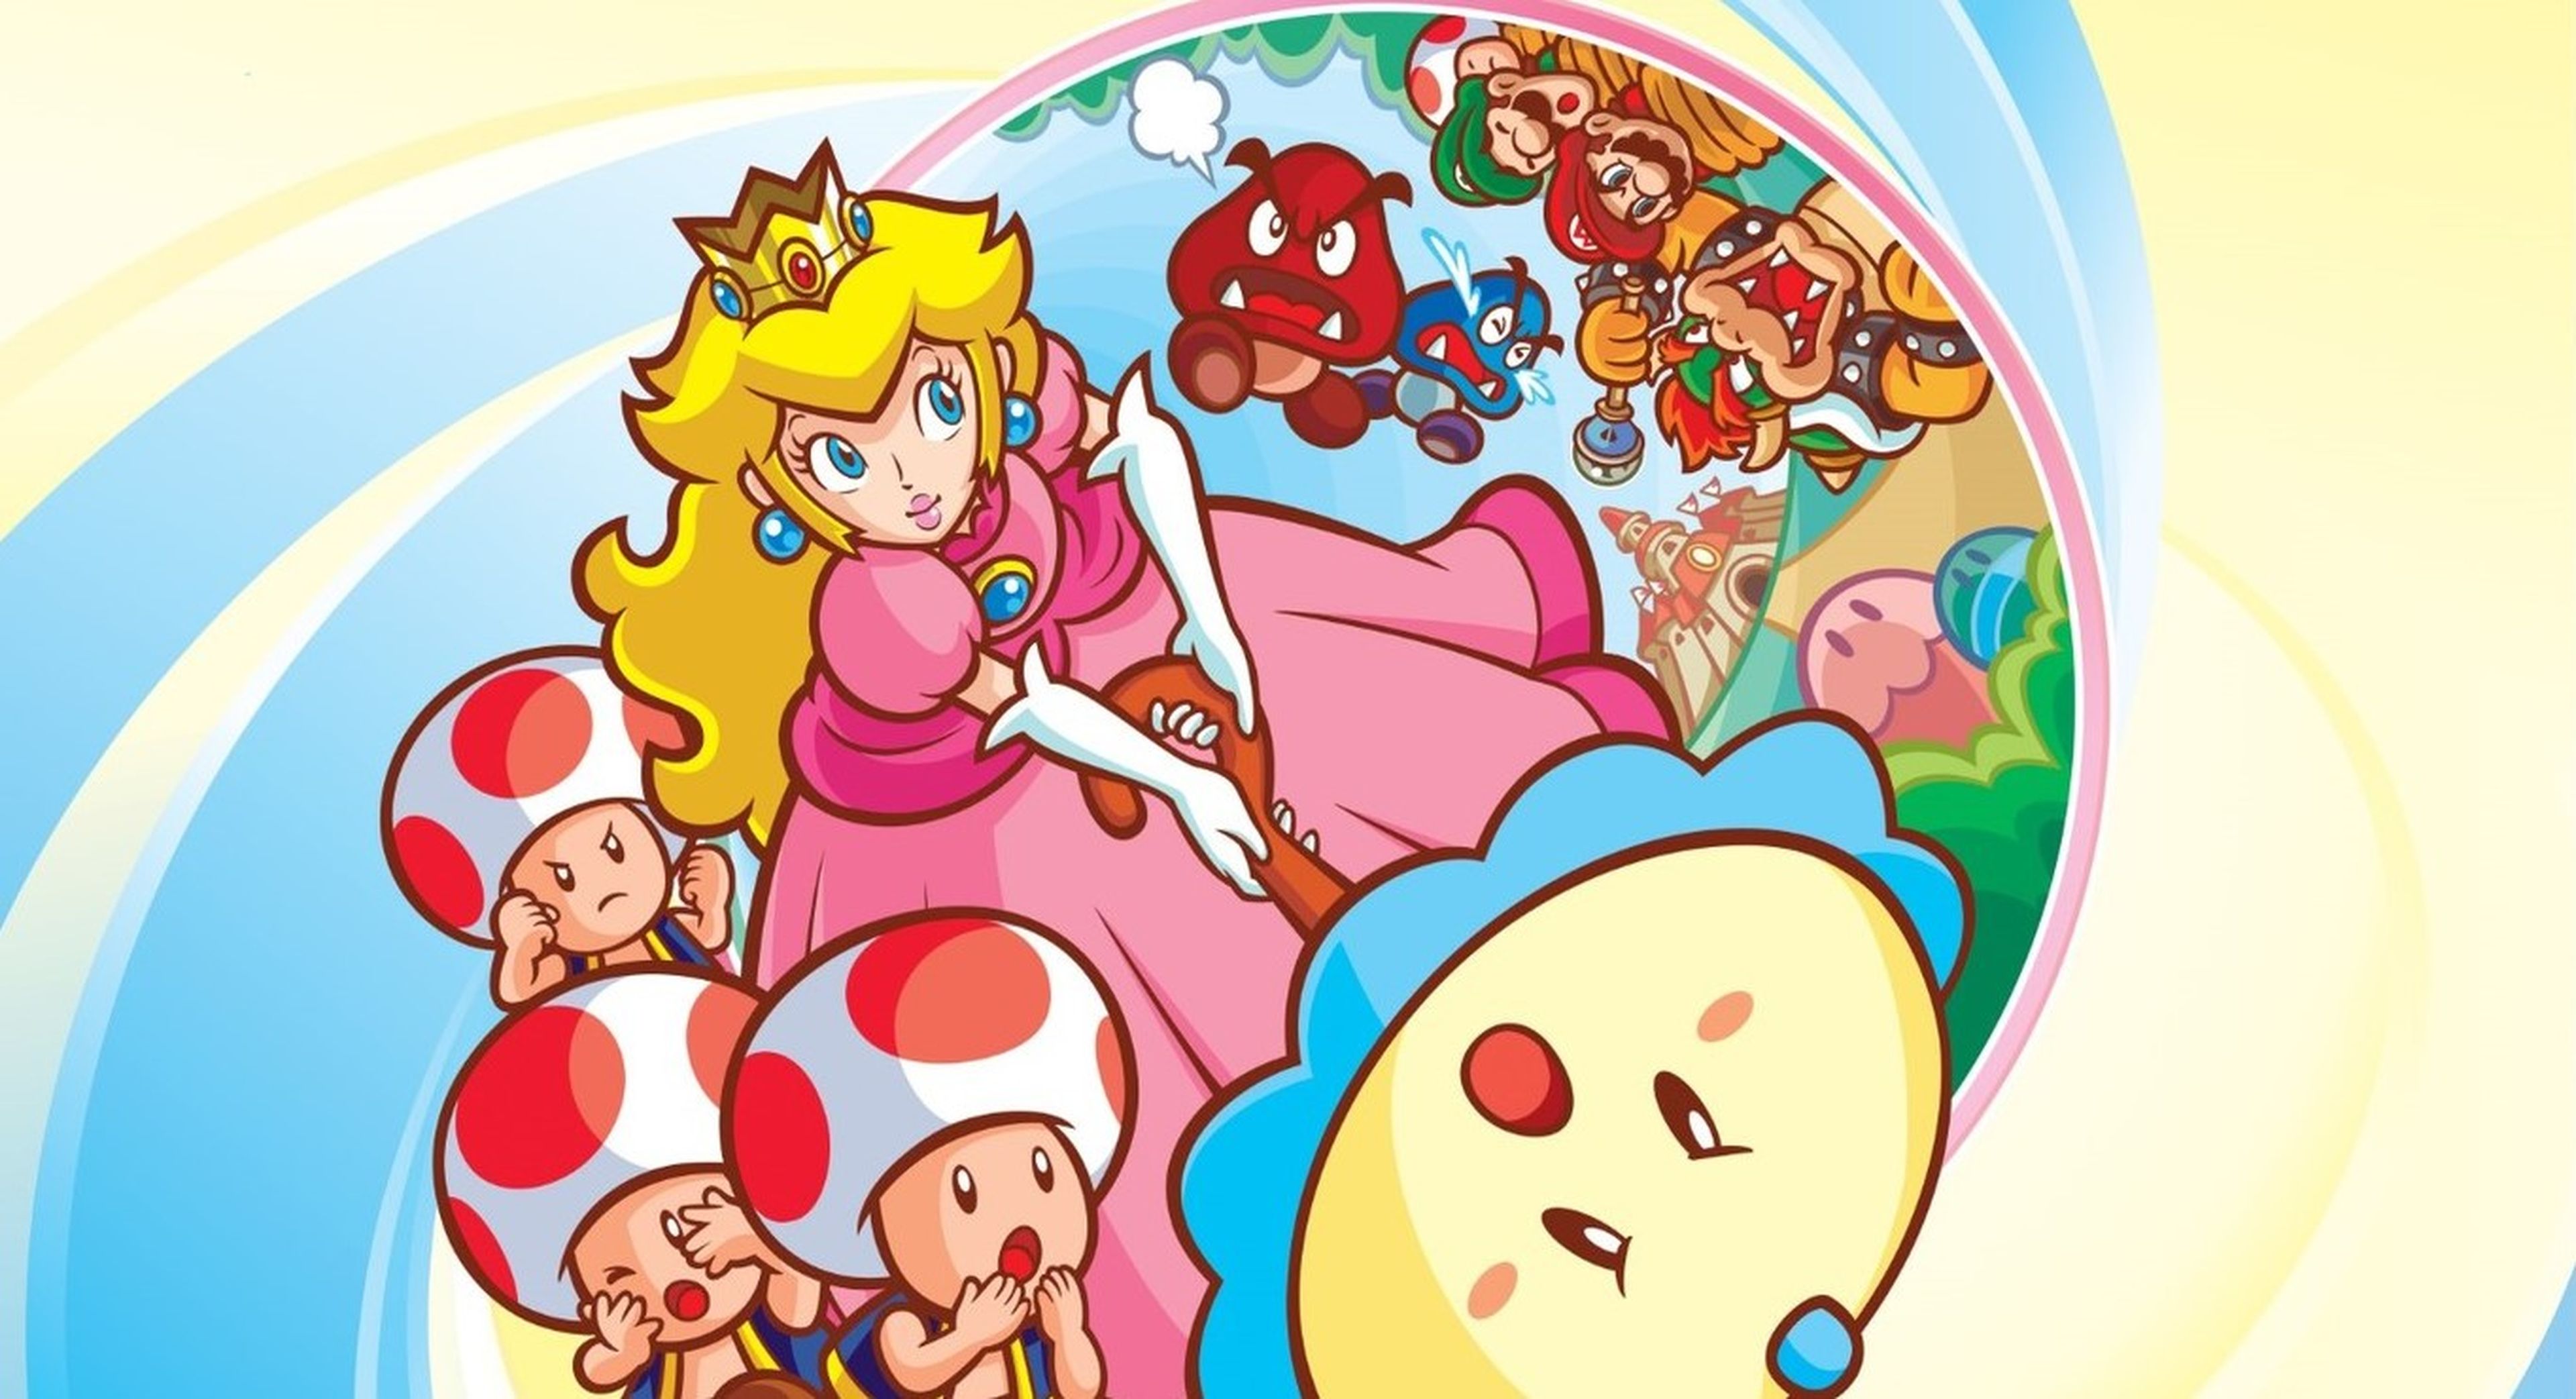 Princess Peach Showtime!: Todo lo que necesitas saber sobre el nuevo juego  de Nintendo Switch